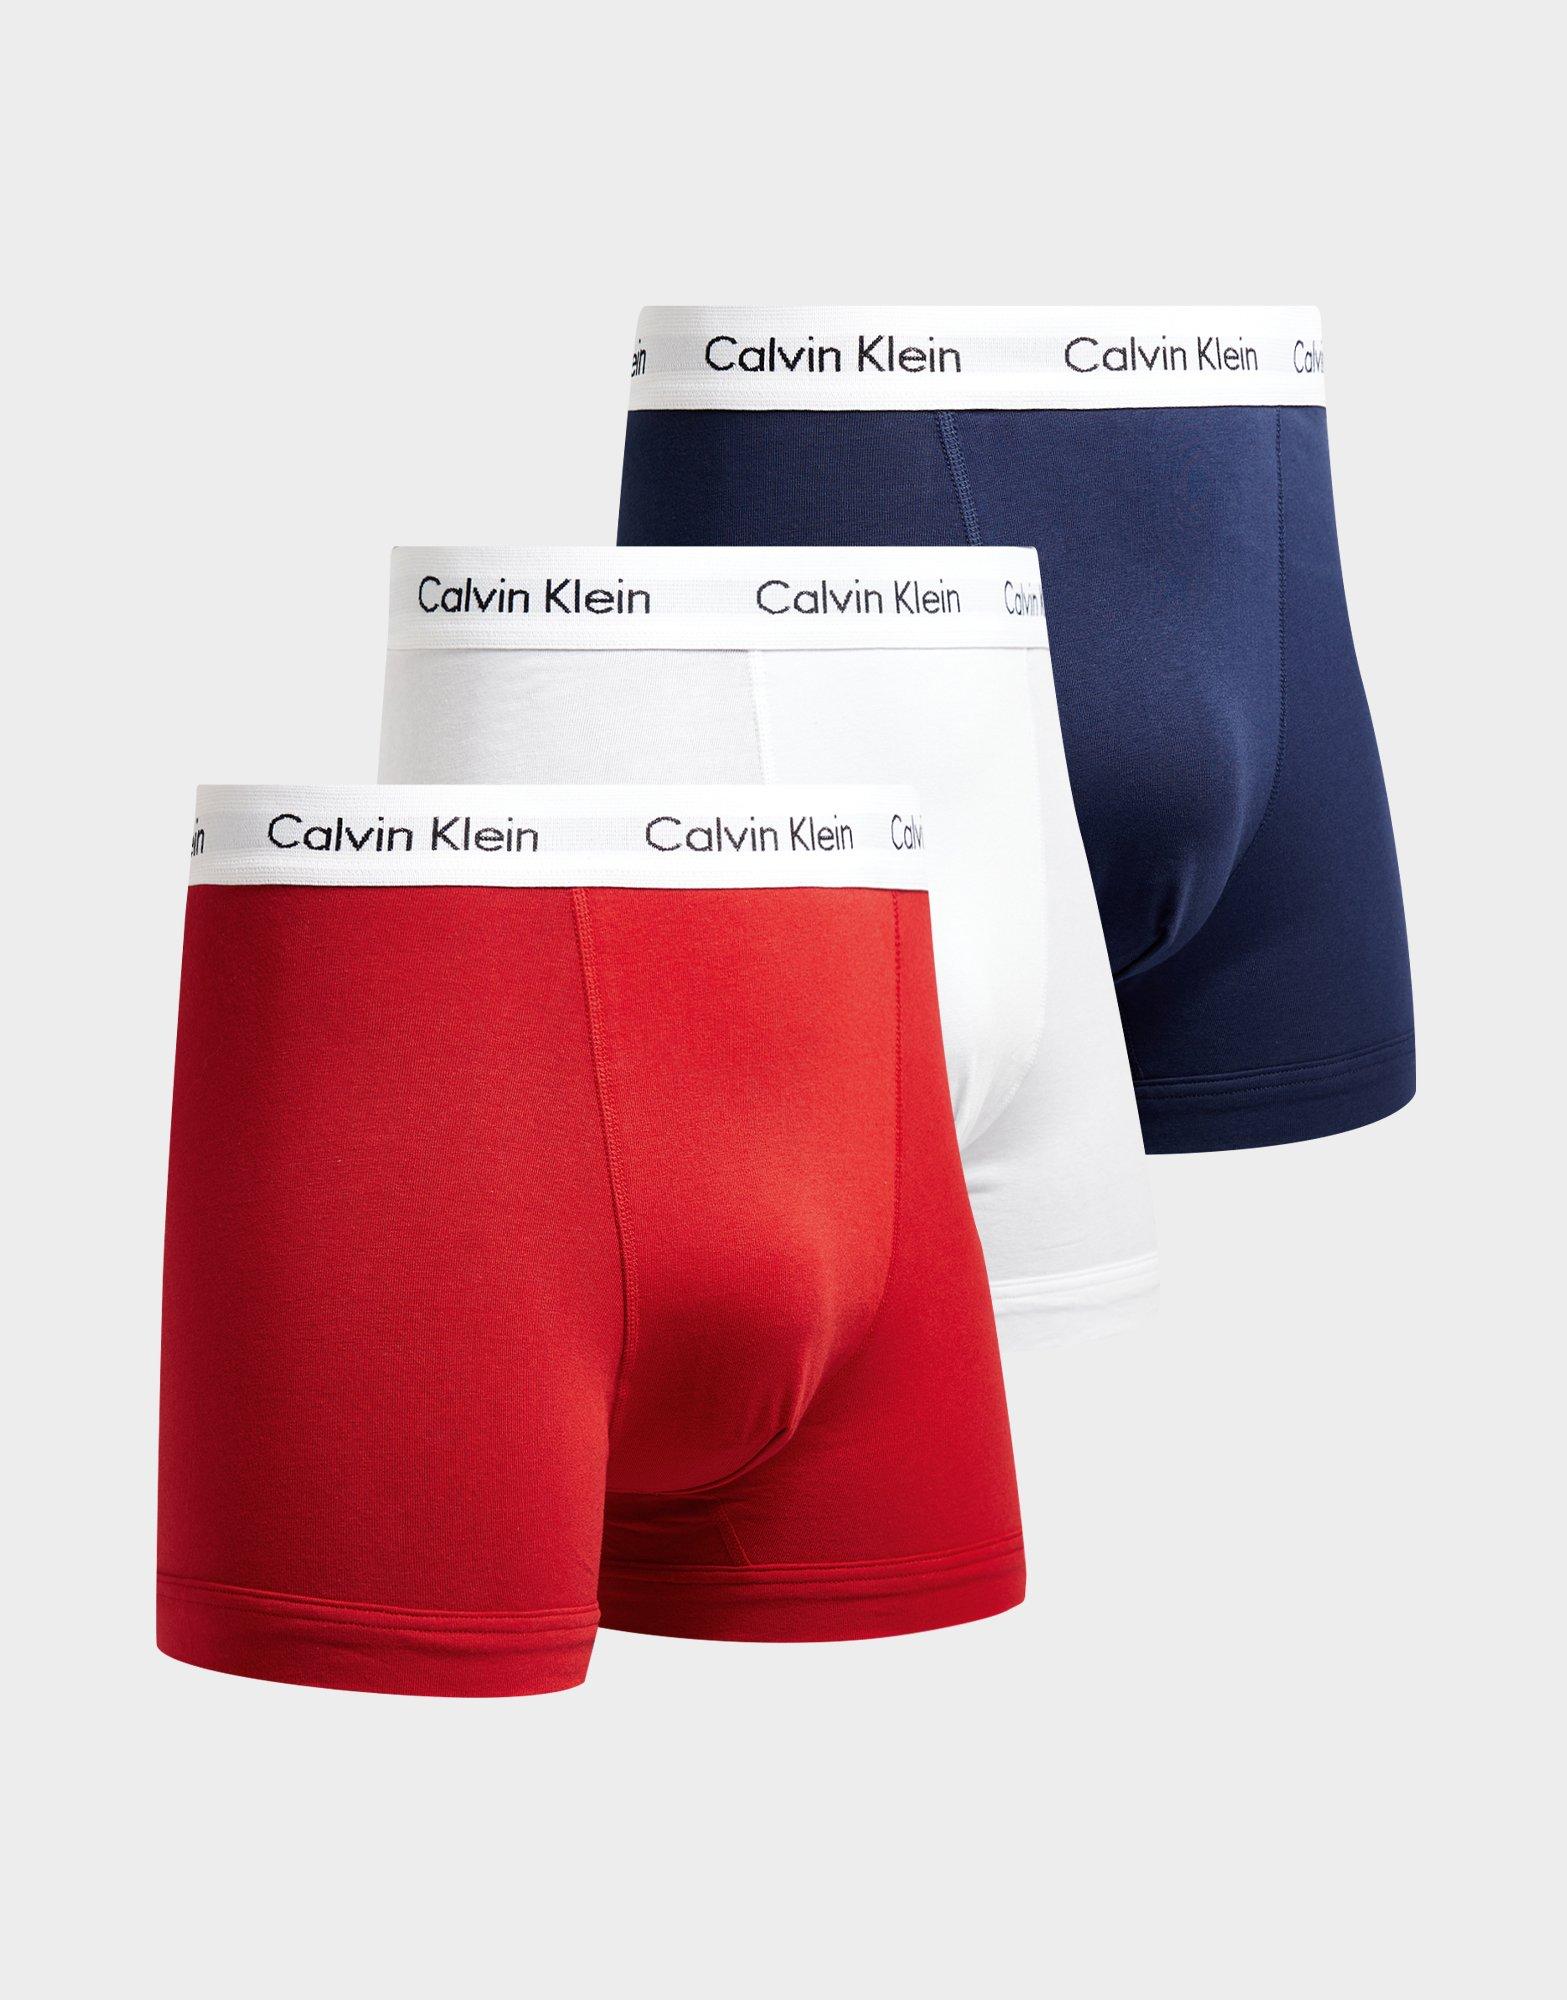 Black Calvin Klein Underwear Socks & Underwear - Gifts - JD Sports Global